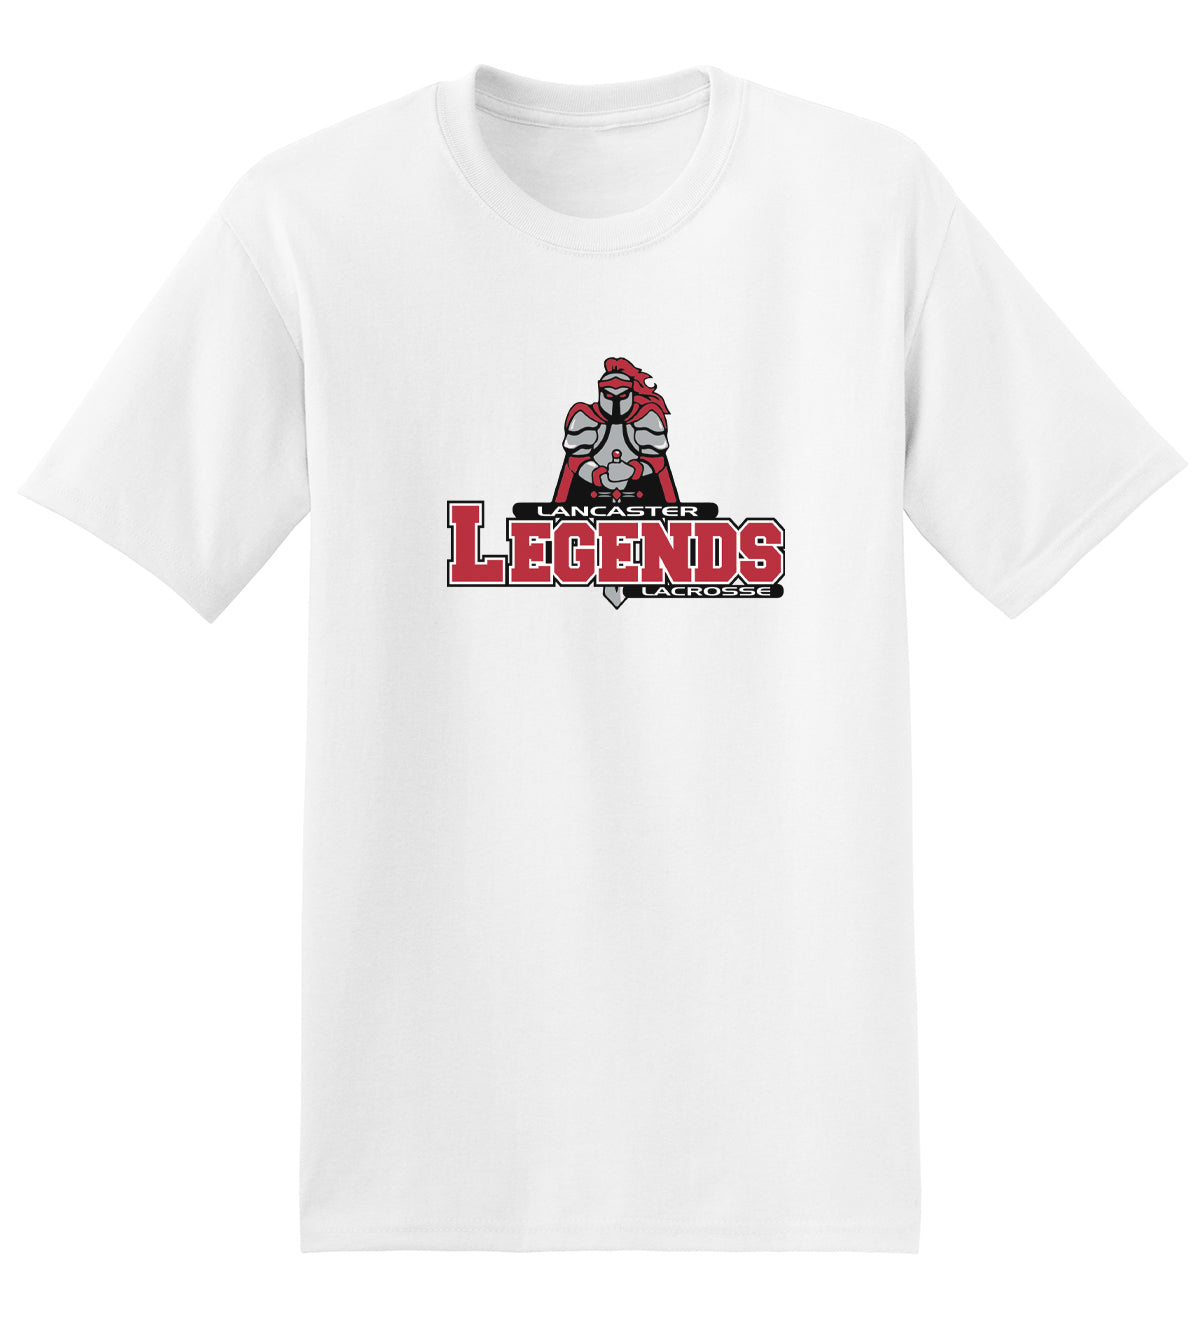 Lancaster Legends Lacrosse White T-Shirt